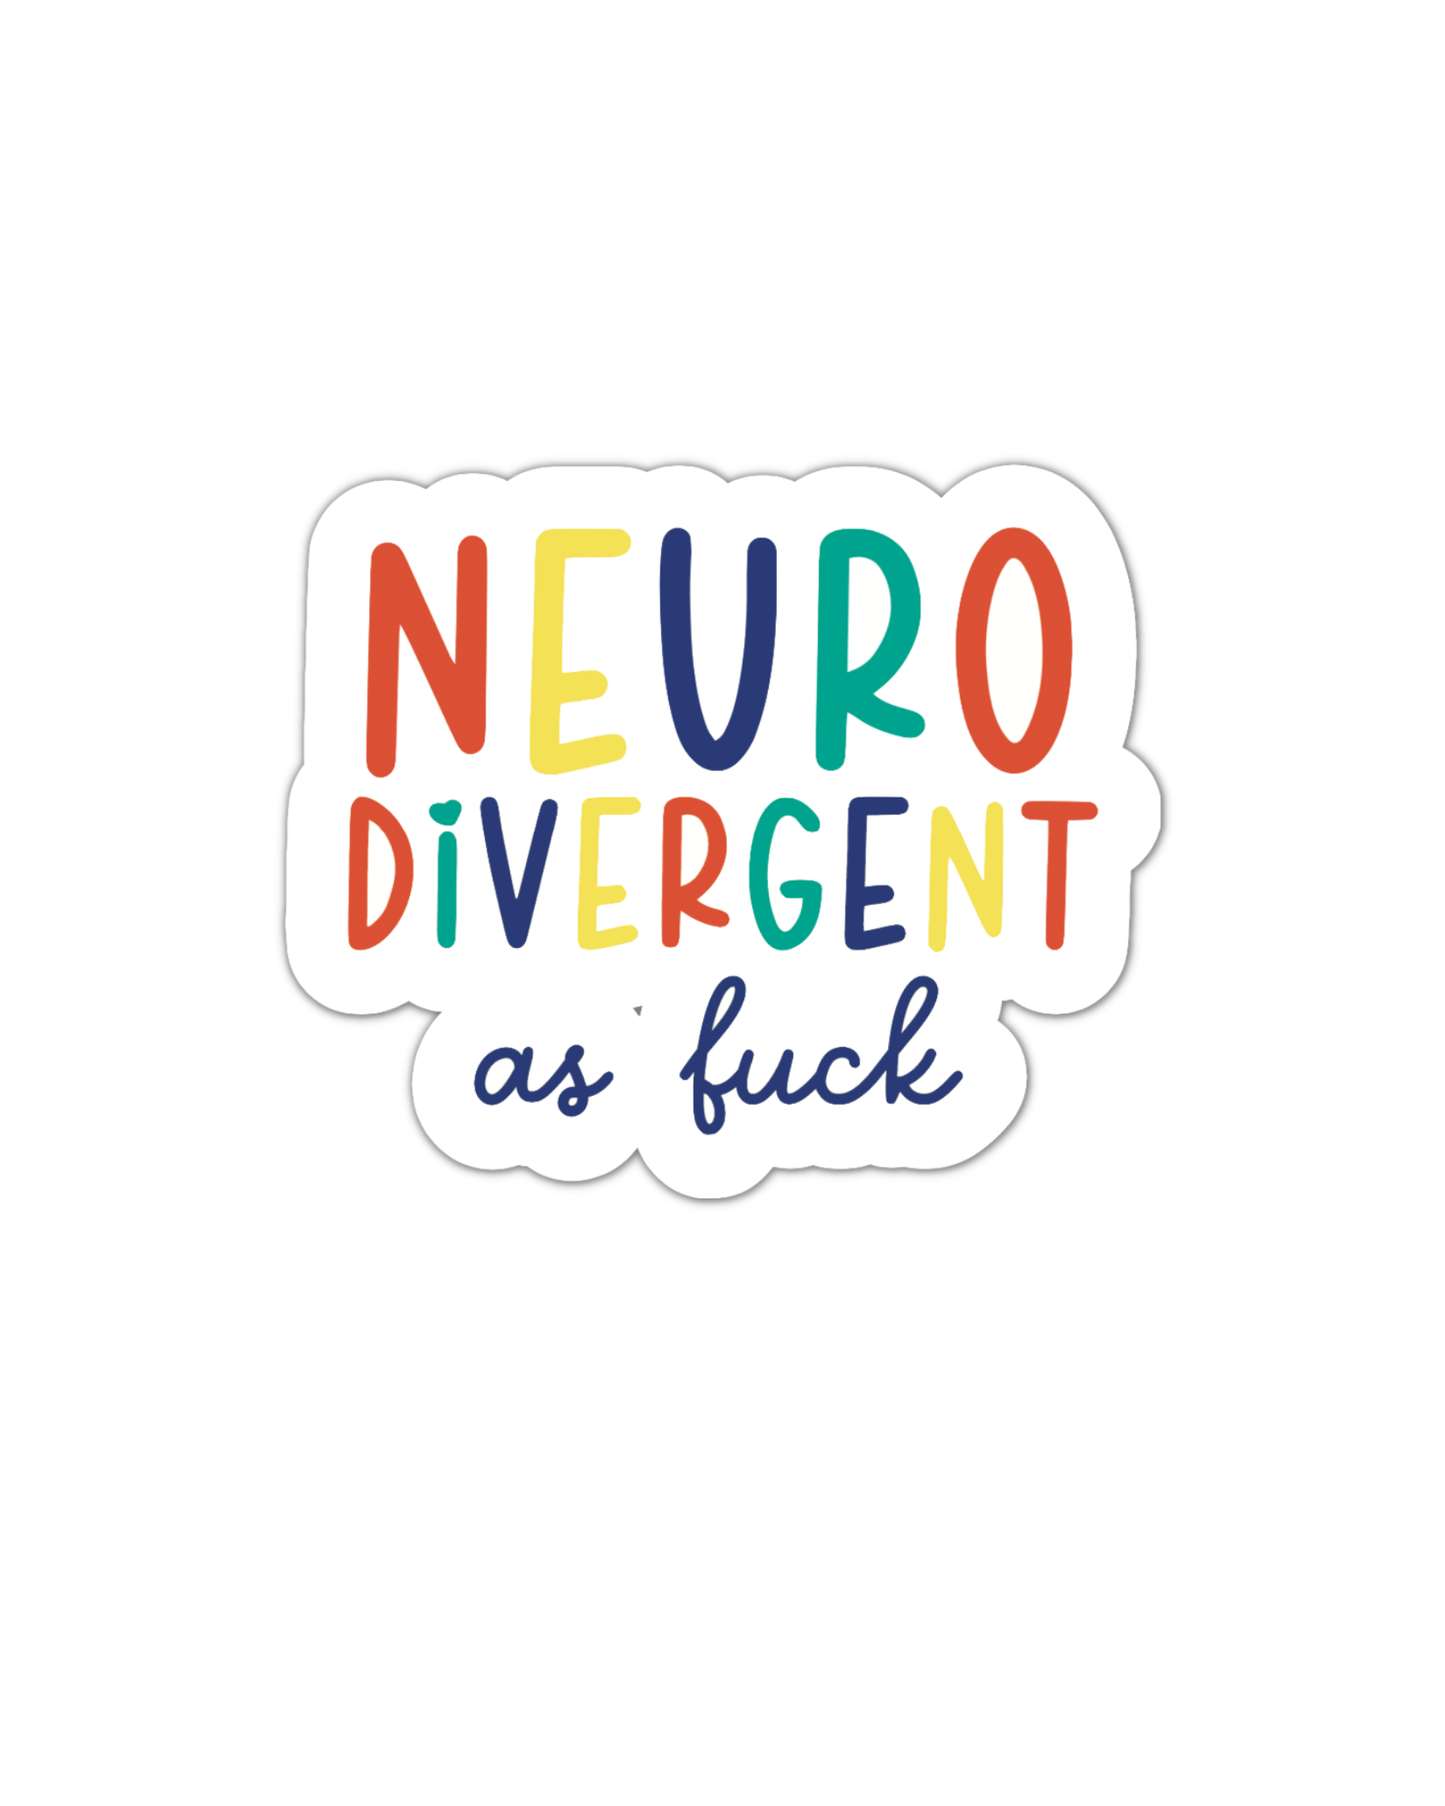 Neurodivergent af Vinyl Sticker